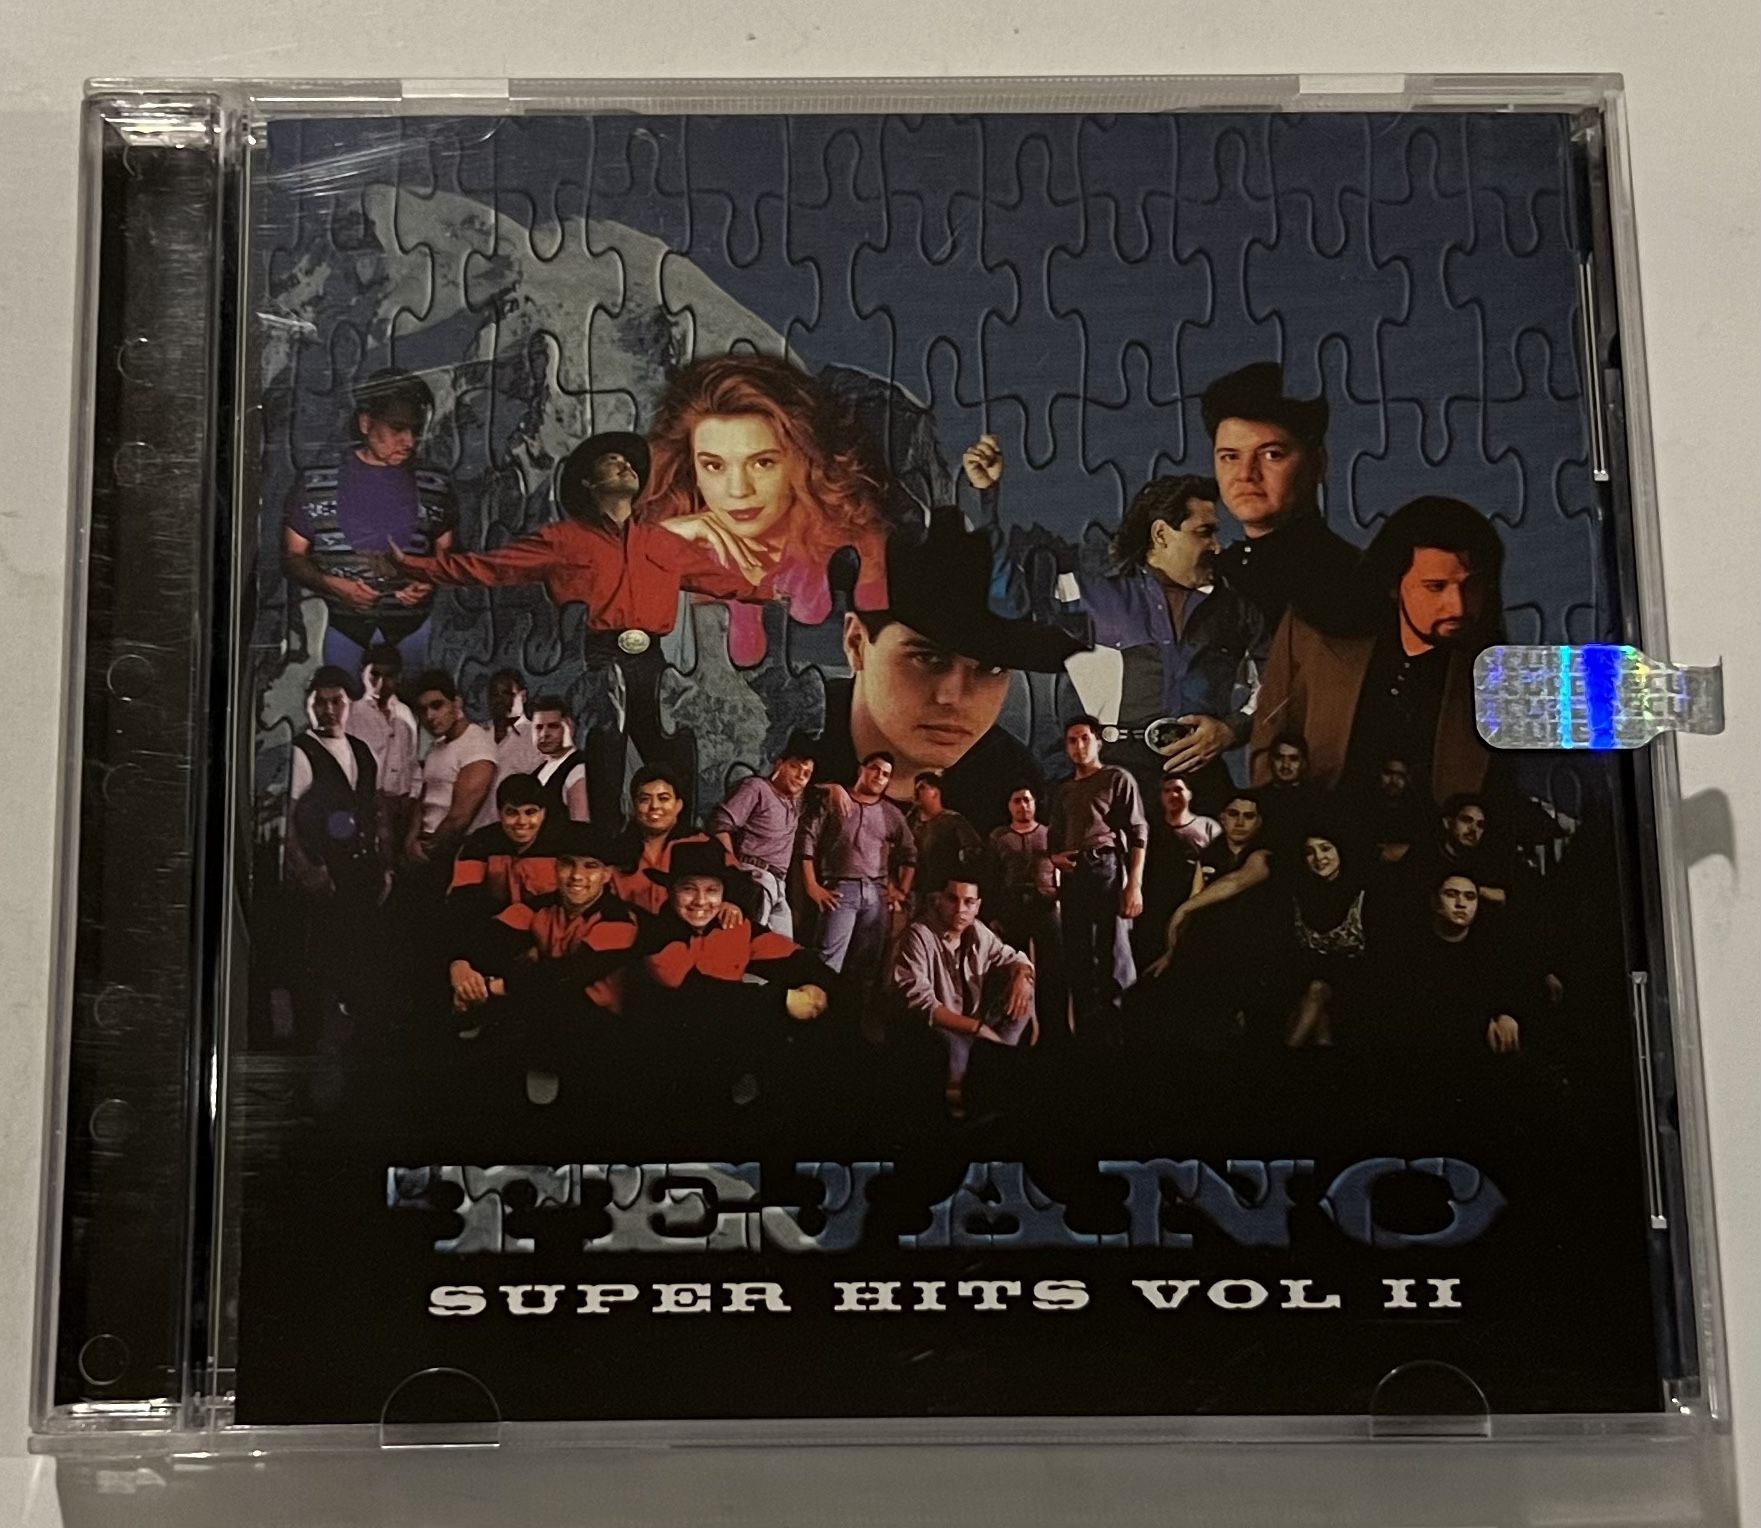 Tejano Super Hits Vol. II (1996, CD, Sony)